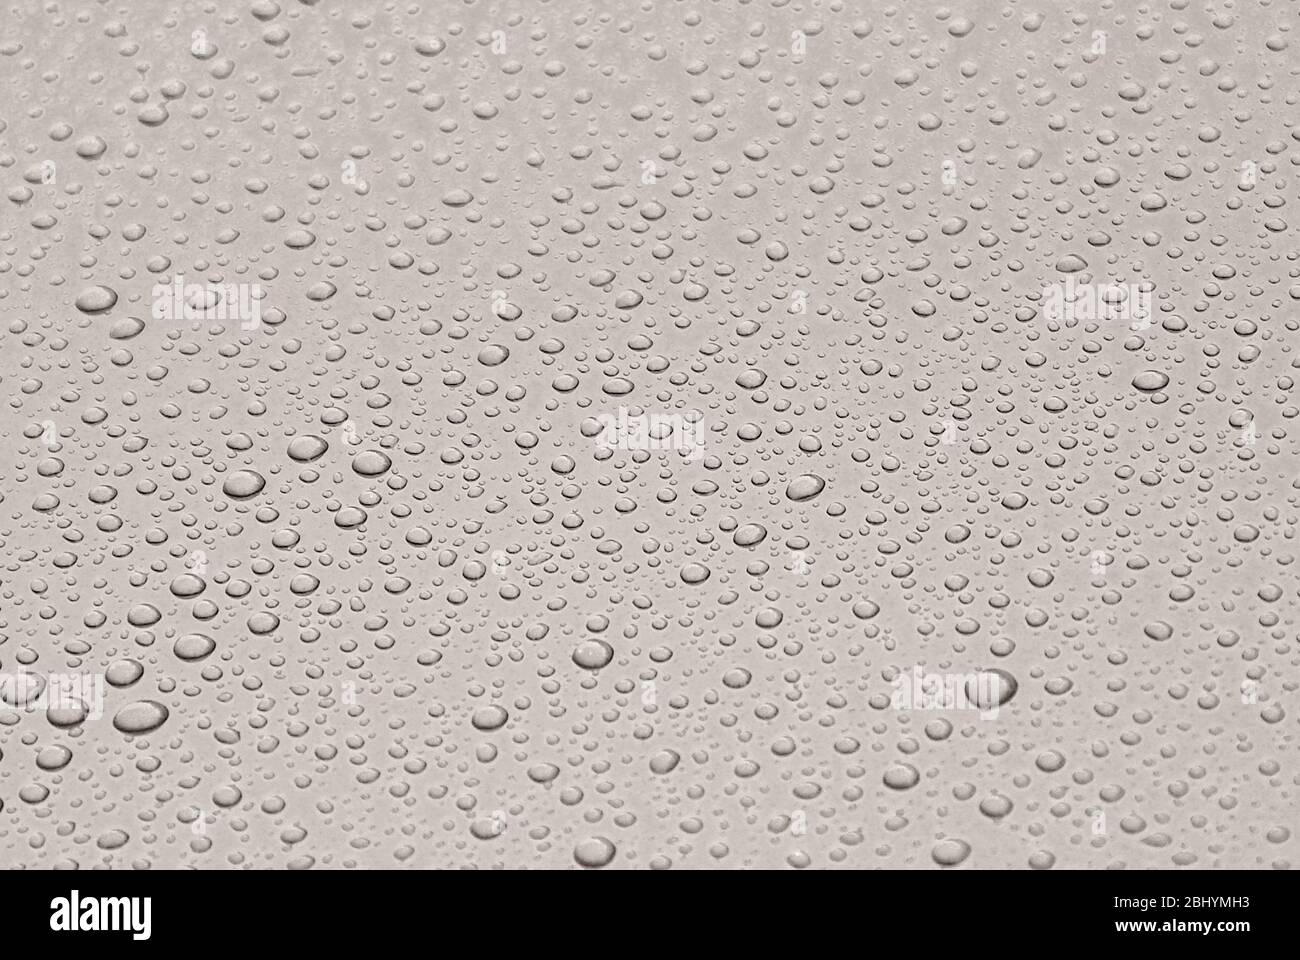 Dicke Regentropfen Rollen von einem glänzend lackierten Blech. Stockfoto